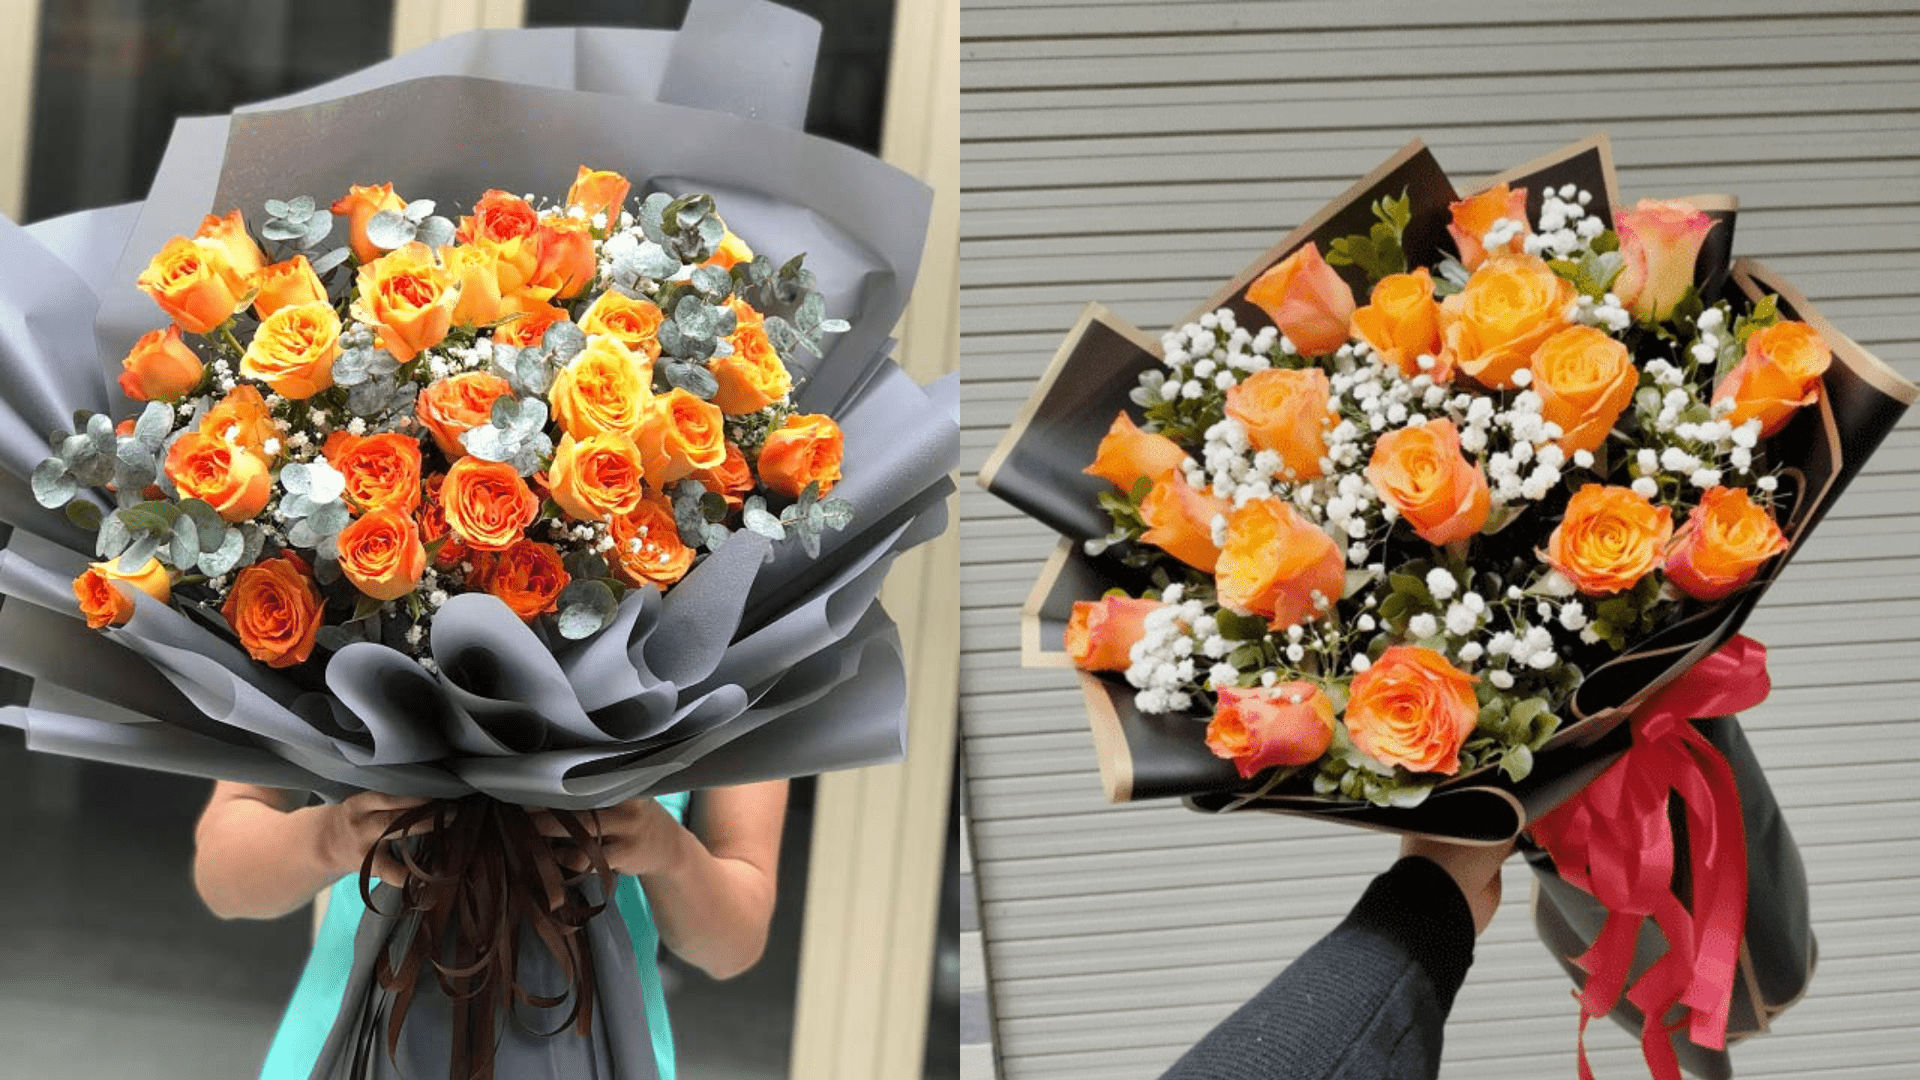 Soul Flowers – Shop hoa Đà Nẵng đa dạng mẫu hoa